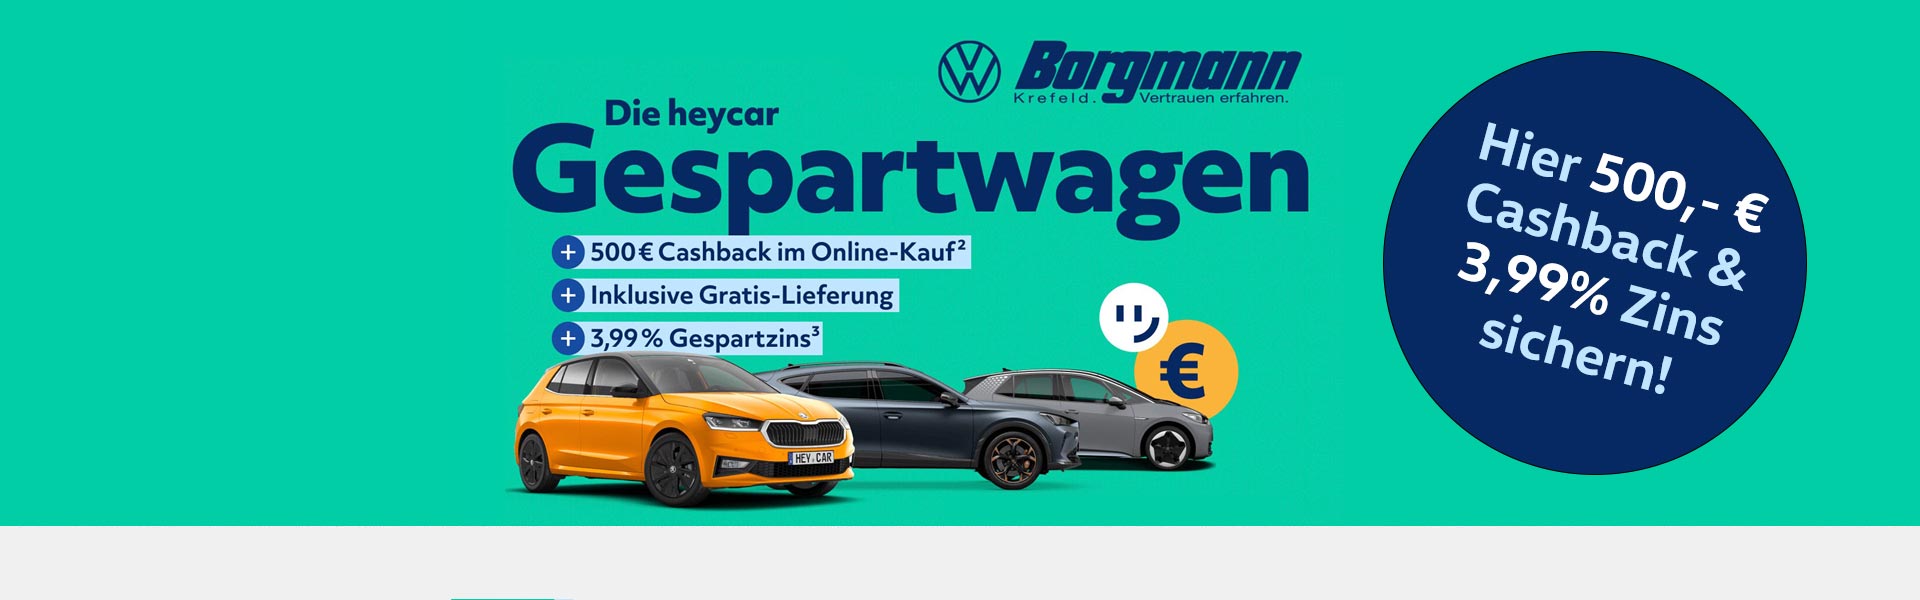 Gespartwagen bei HeyCar mit 500€ Cashback